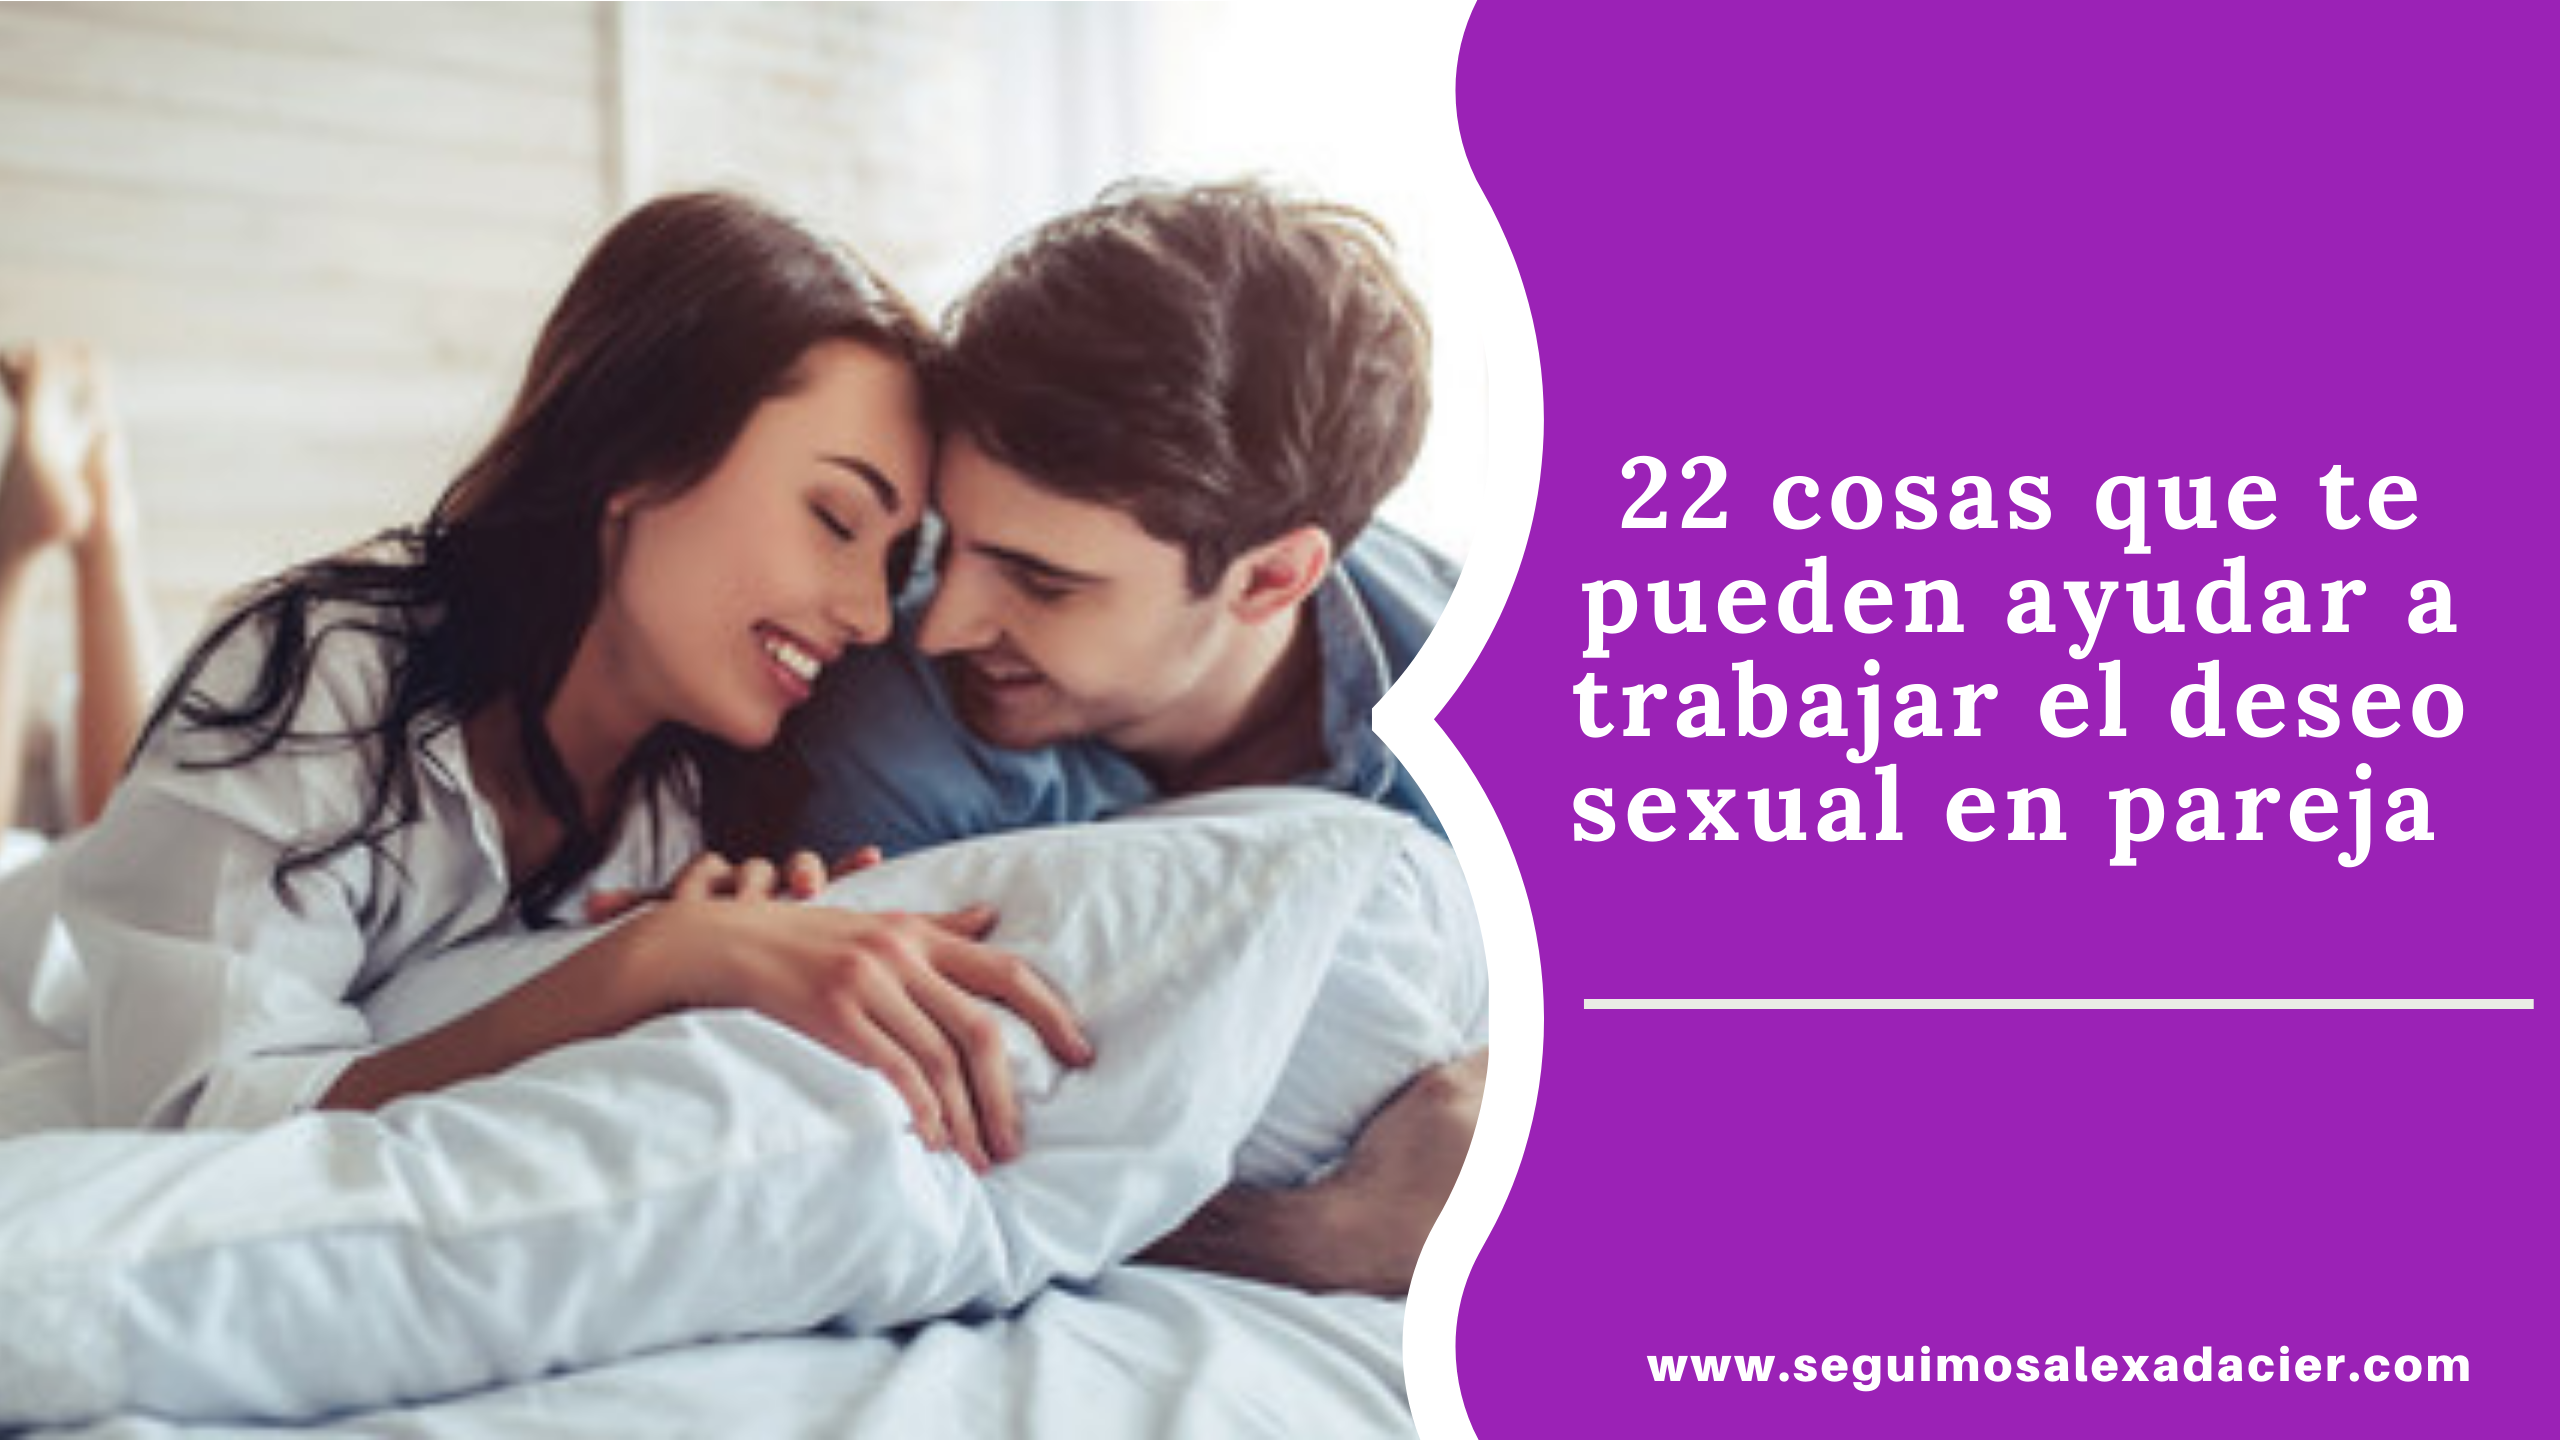 22 cosas que te pueden ayudar a trabajar el deseo sexual en pareja